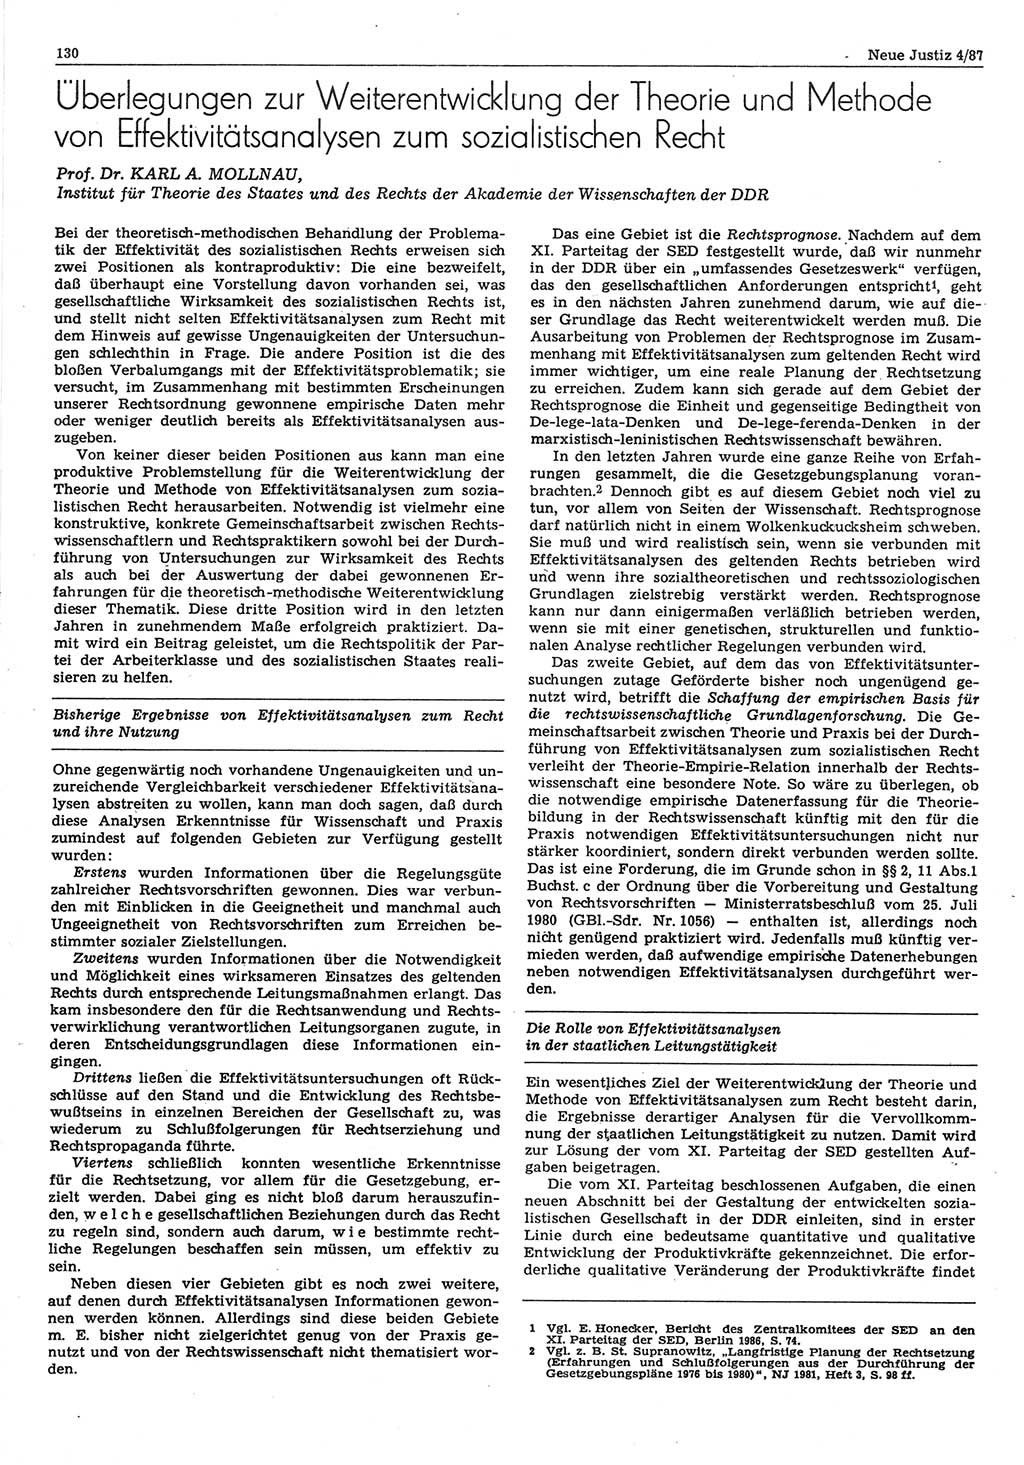 Neue Justiz (NJ), Zeitschrift für sozialistisches Recht und Gesetzlichkeit [Deutsche Demokratische Republik (DDR)], 41. Jahrgang 1987, Seite 130 (NJ DDR 1987, S. 130)